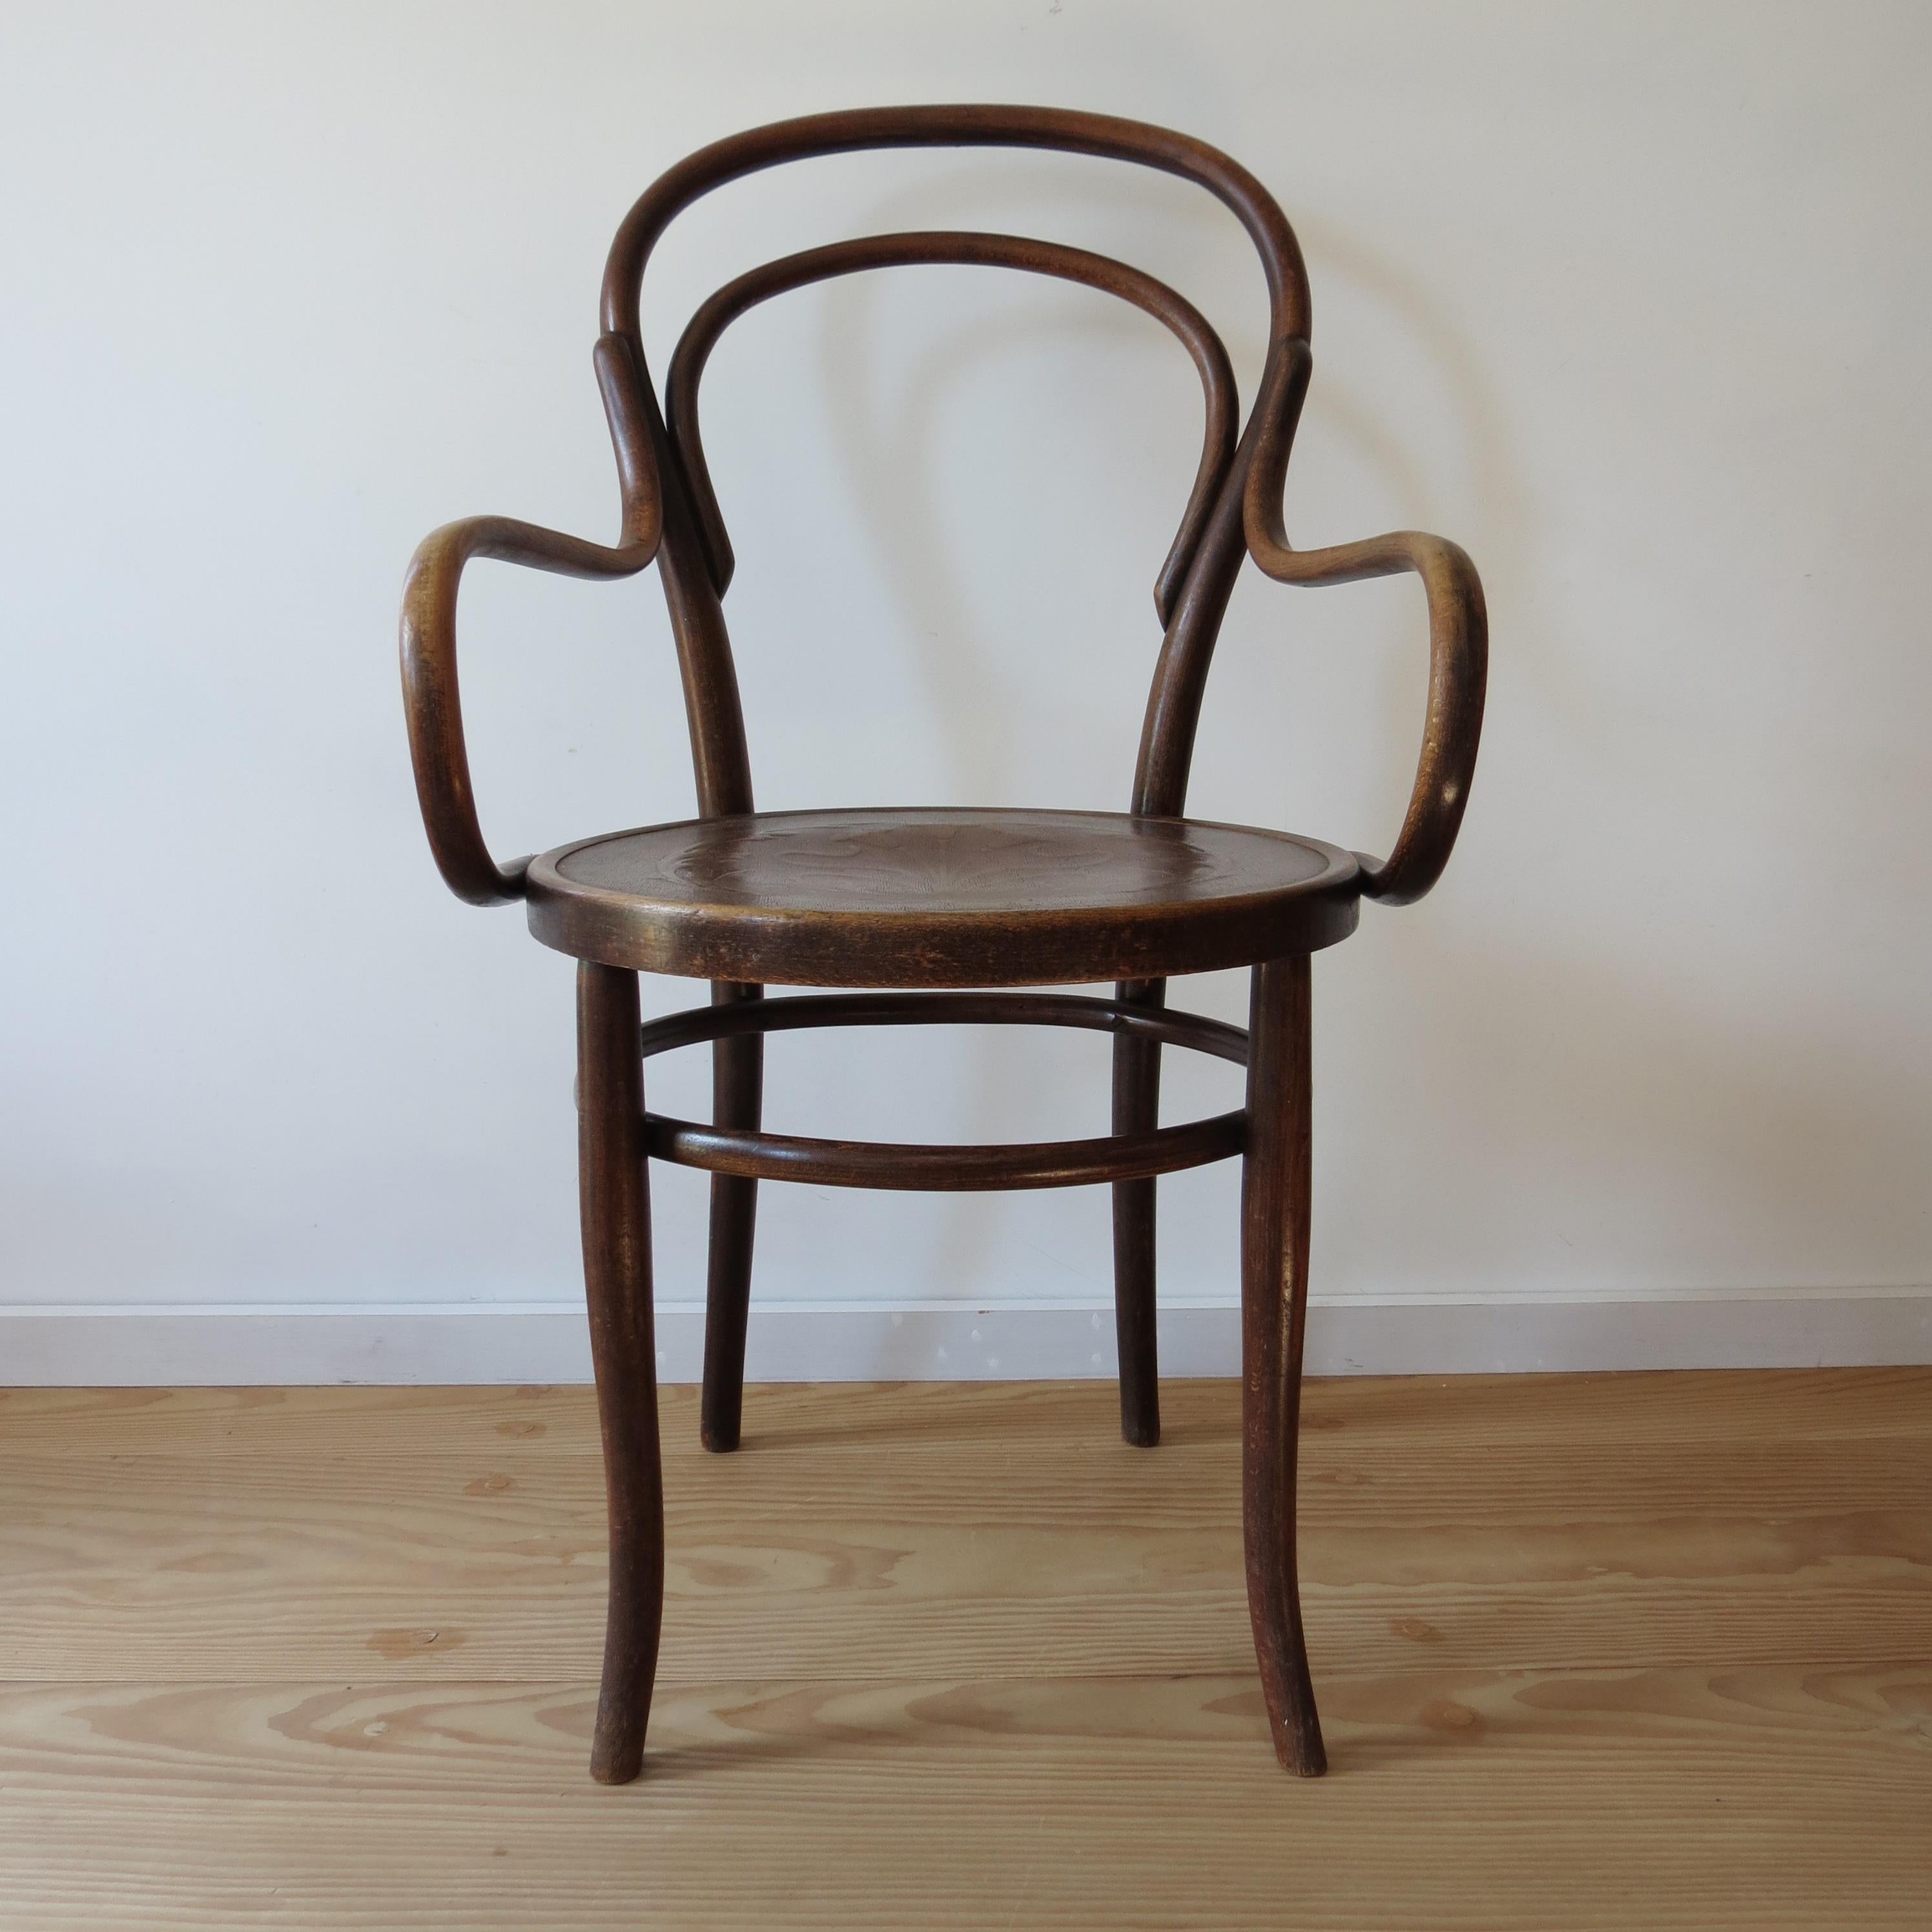 Austrian Antique Bentwood Chair No 14 by Thonet 19th Century Art Nouveau